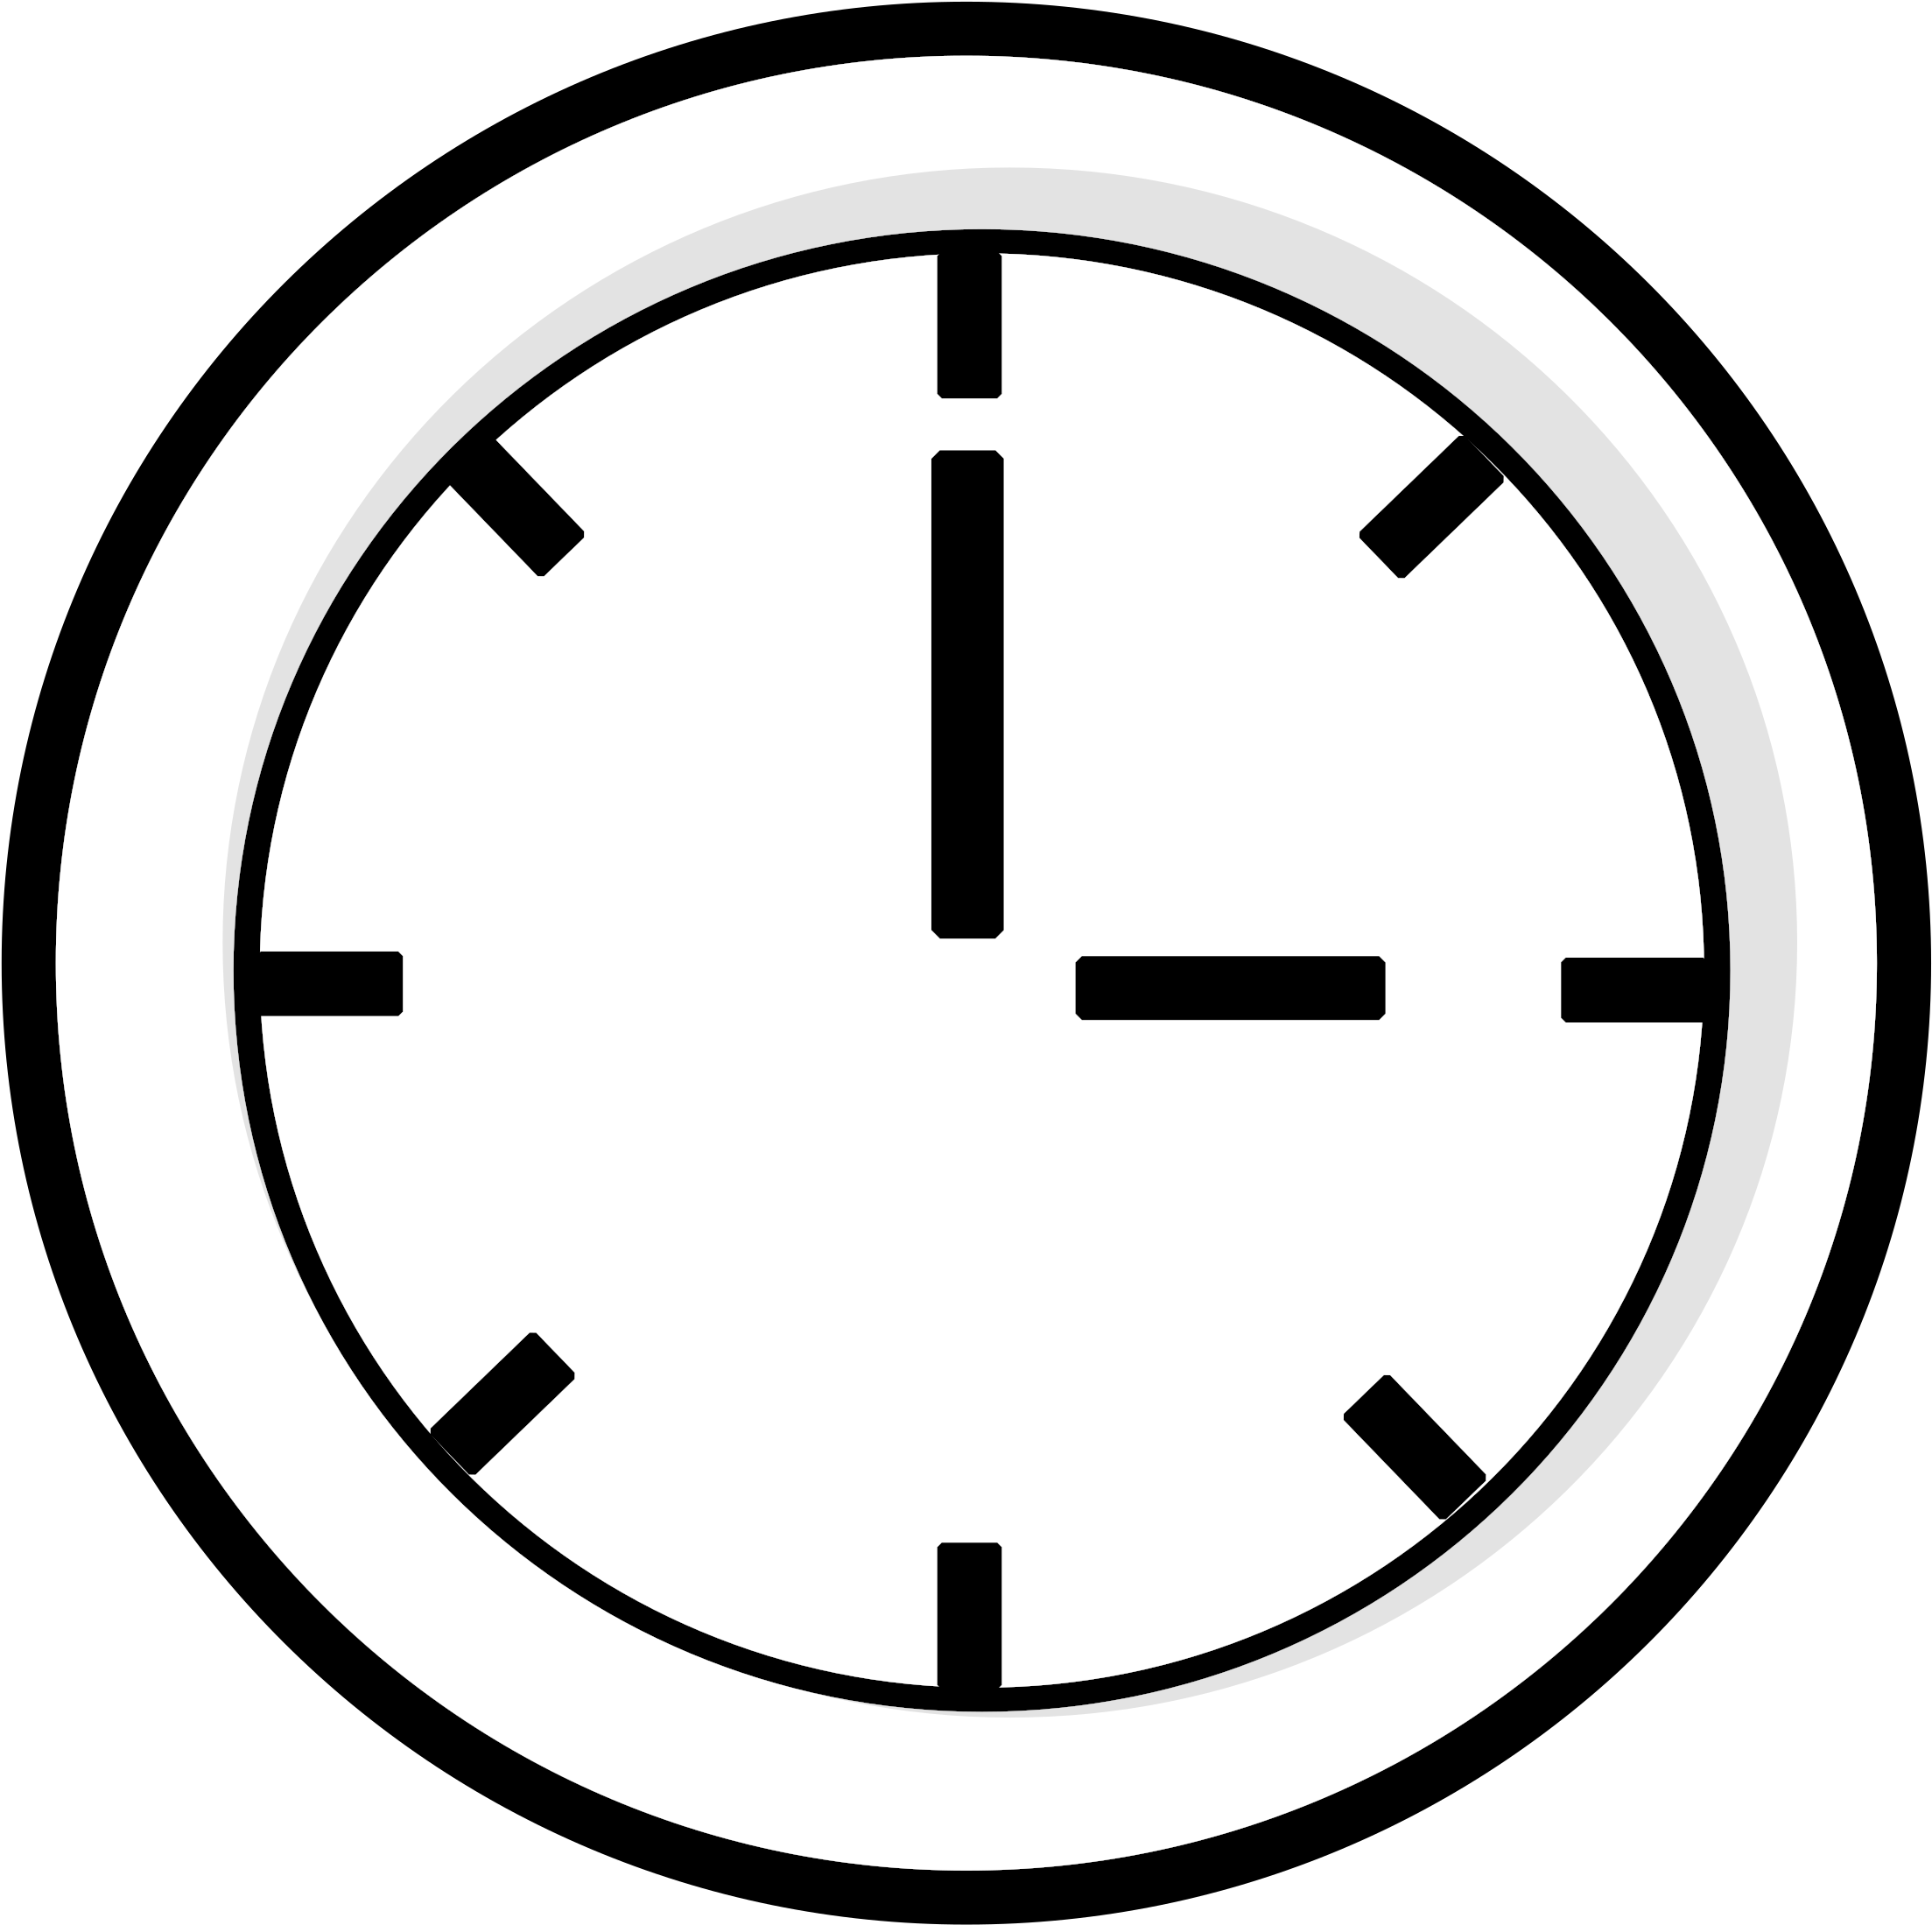 Значок часов. Часы символ. Пиктограмма часов. Иконка часы на прозрачном фоне. Знак часы 10 10